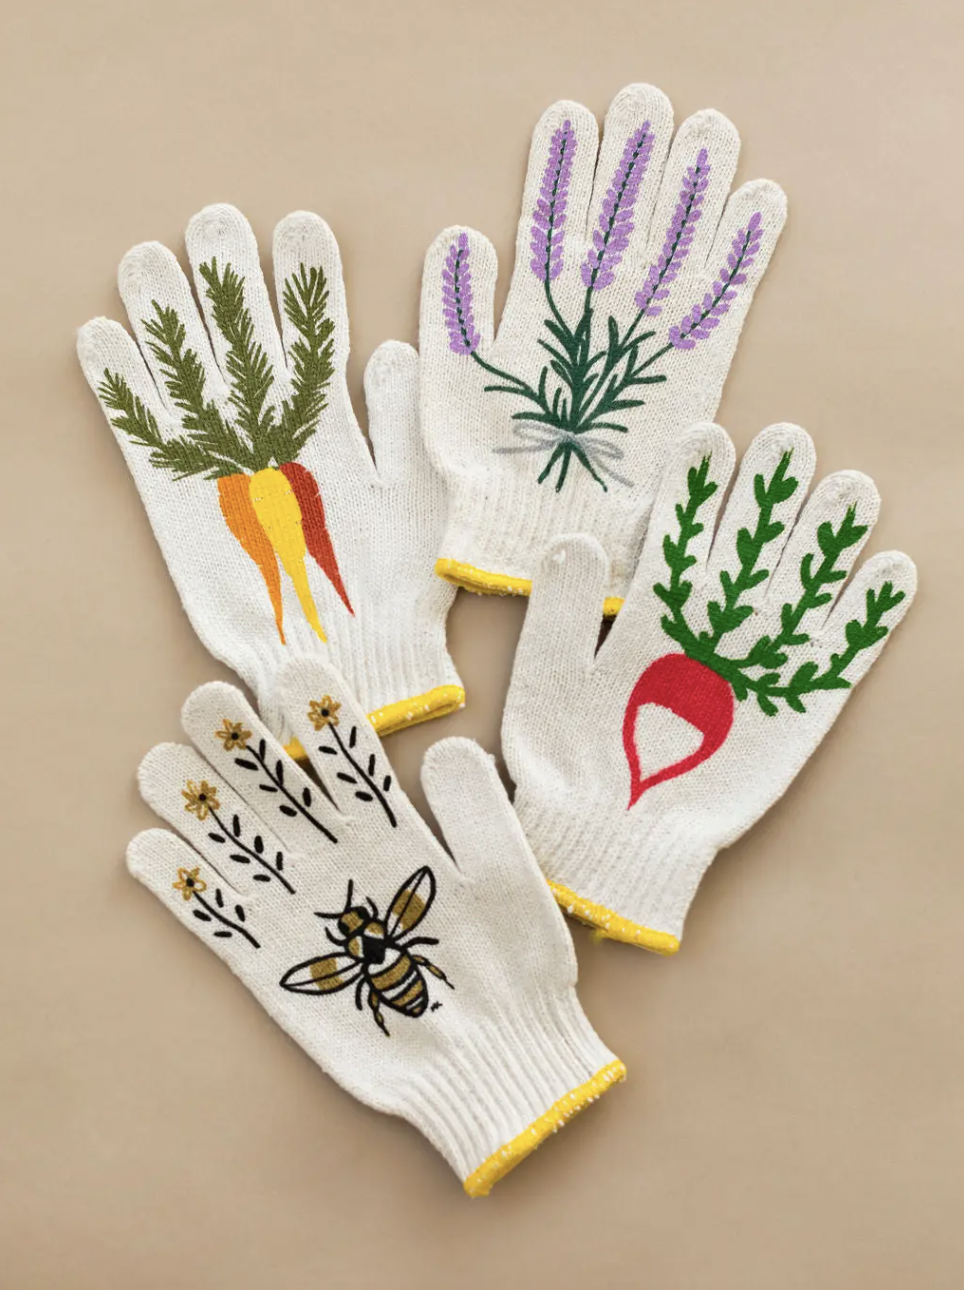 My Little Belleville Lavender Gardening Gloves